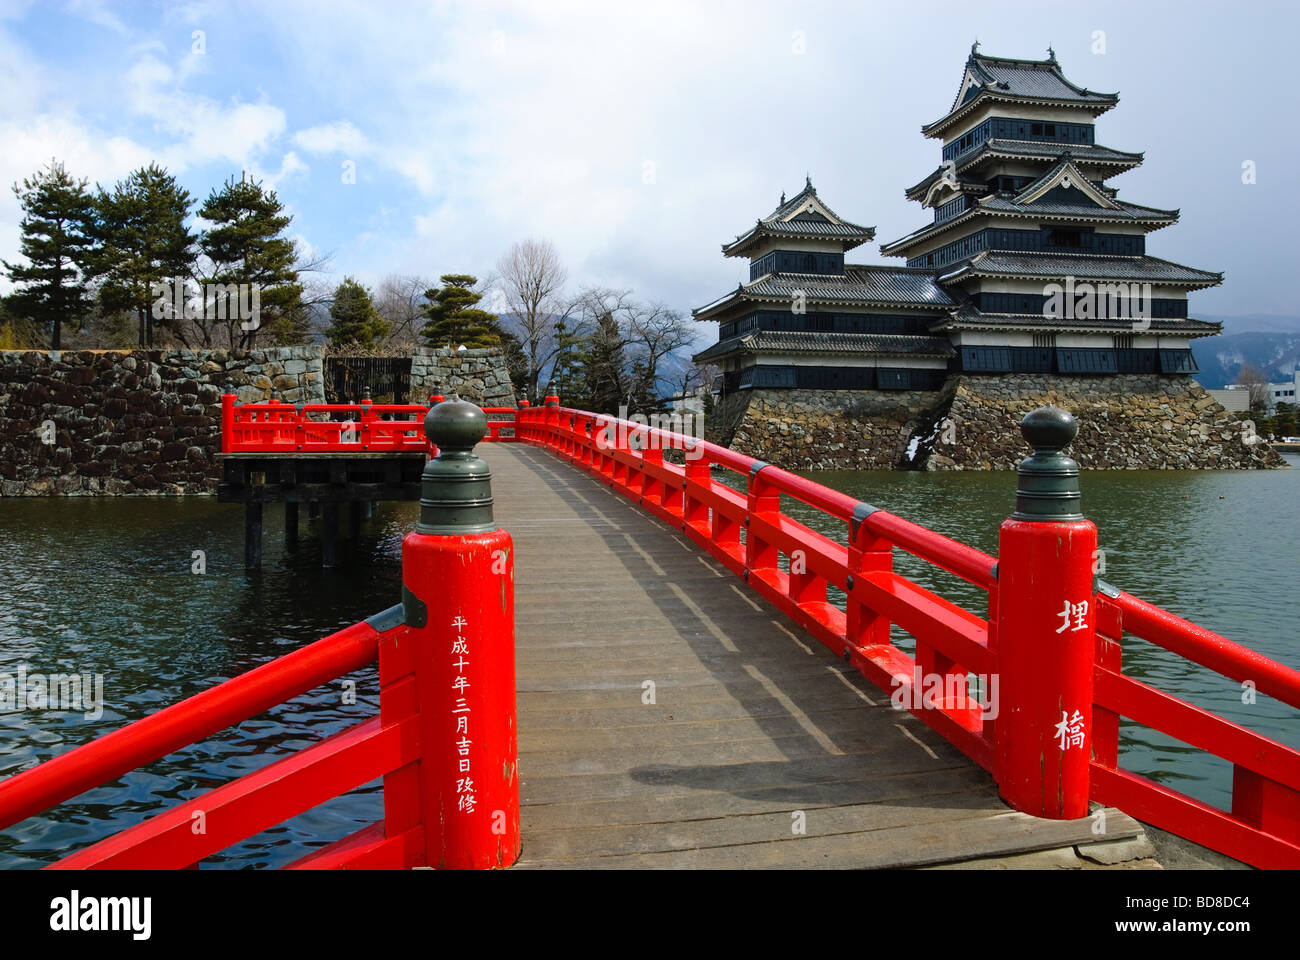 Storico castello di matsumoto giappone tipica architettura giapponese Foto Stock